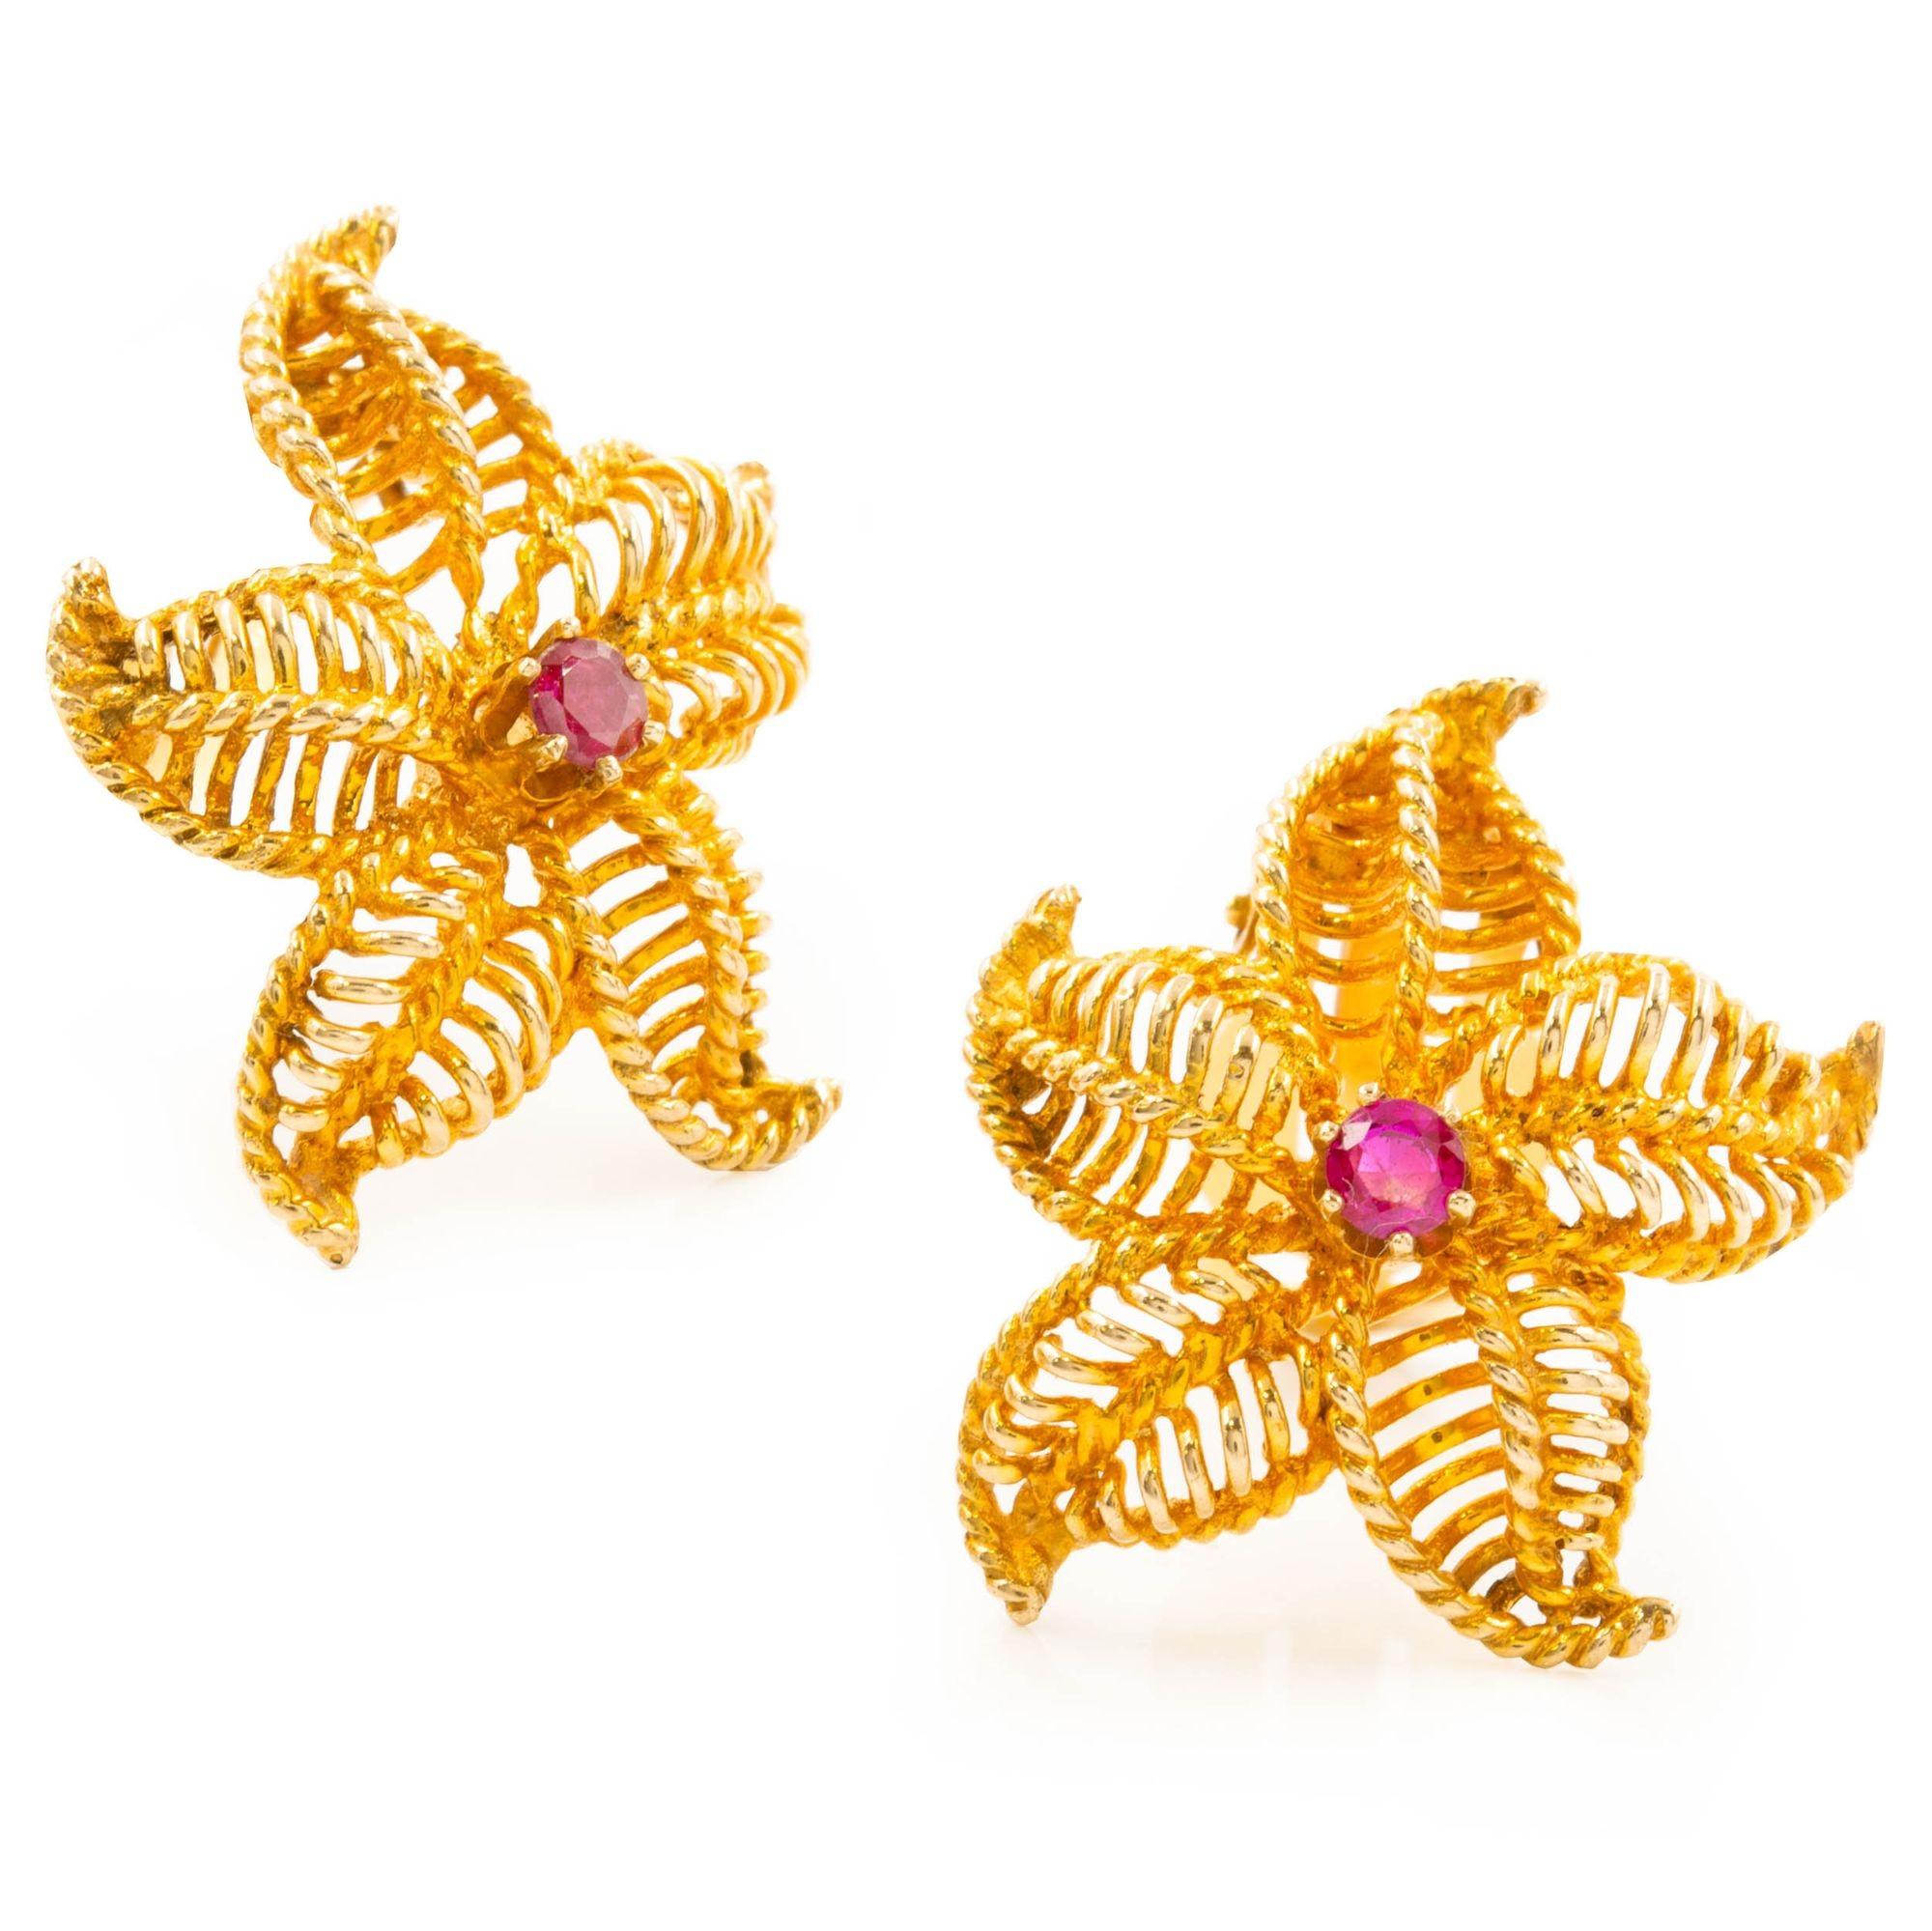 Paire de boucles d'oreilles étoile de mer en or jaune 14K et pierres précieuses
Article # C104608

Boucles d'oreilles au design complexe ressemblant à des étoiles de mer en or jaune 14 carats. Chaque boucle d'oreille est ornée d'une pierre précieuse